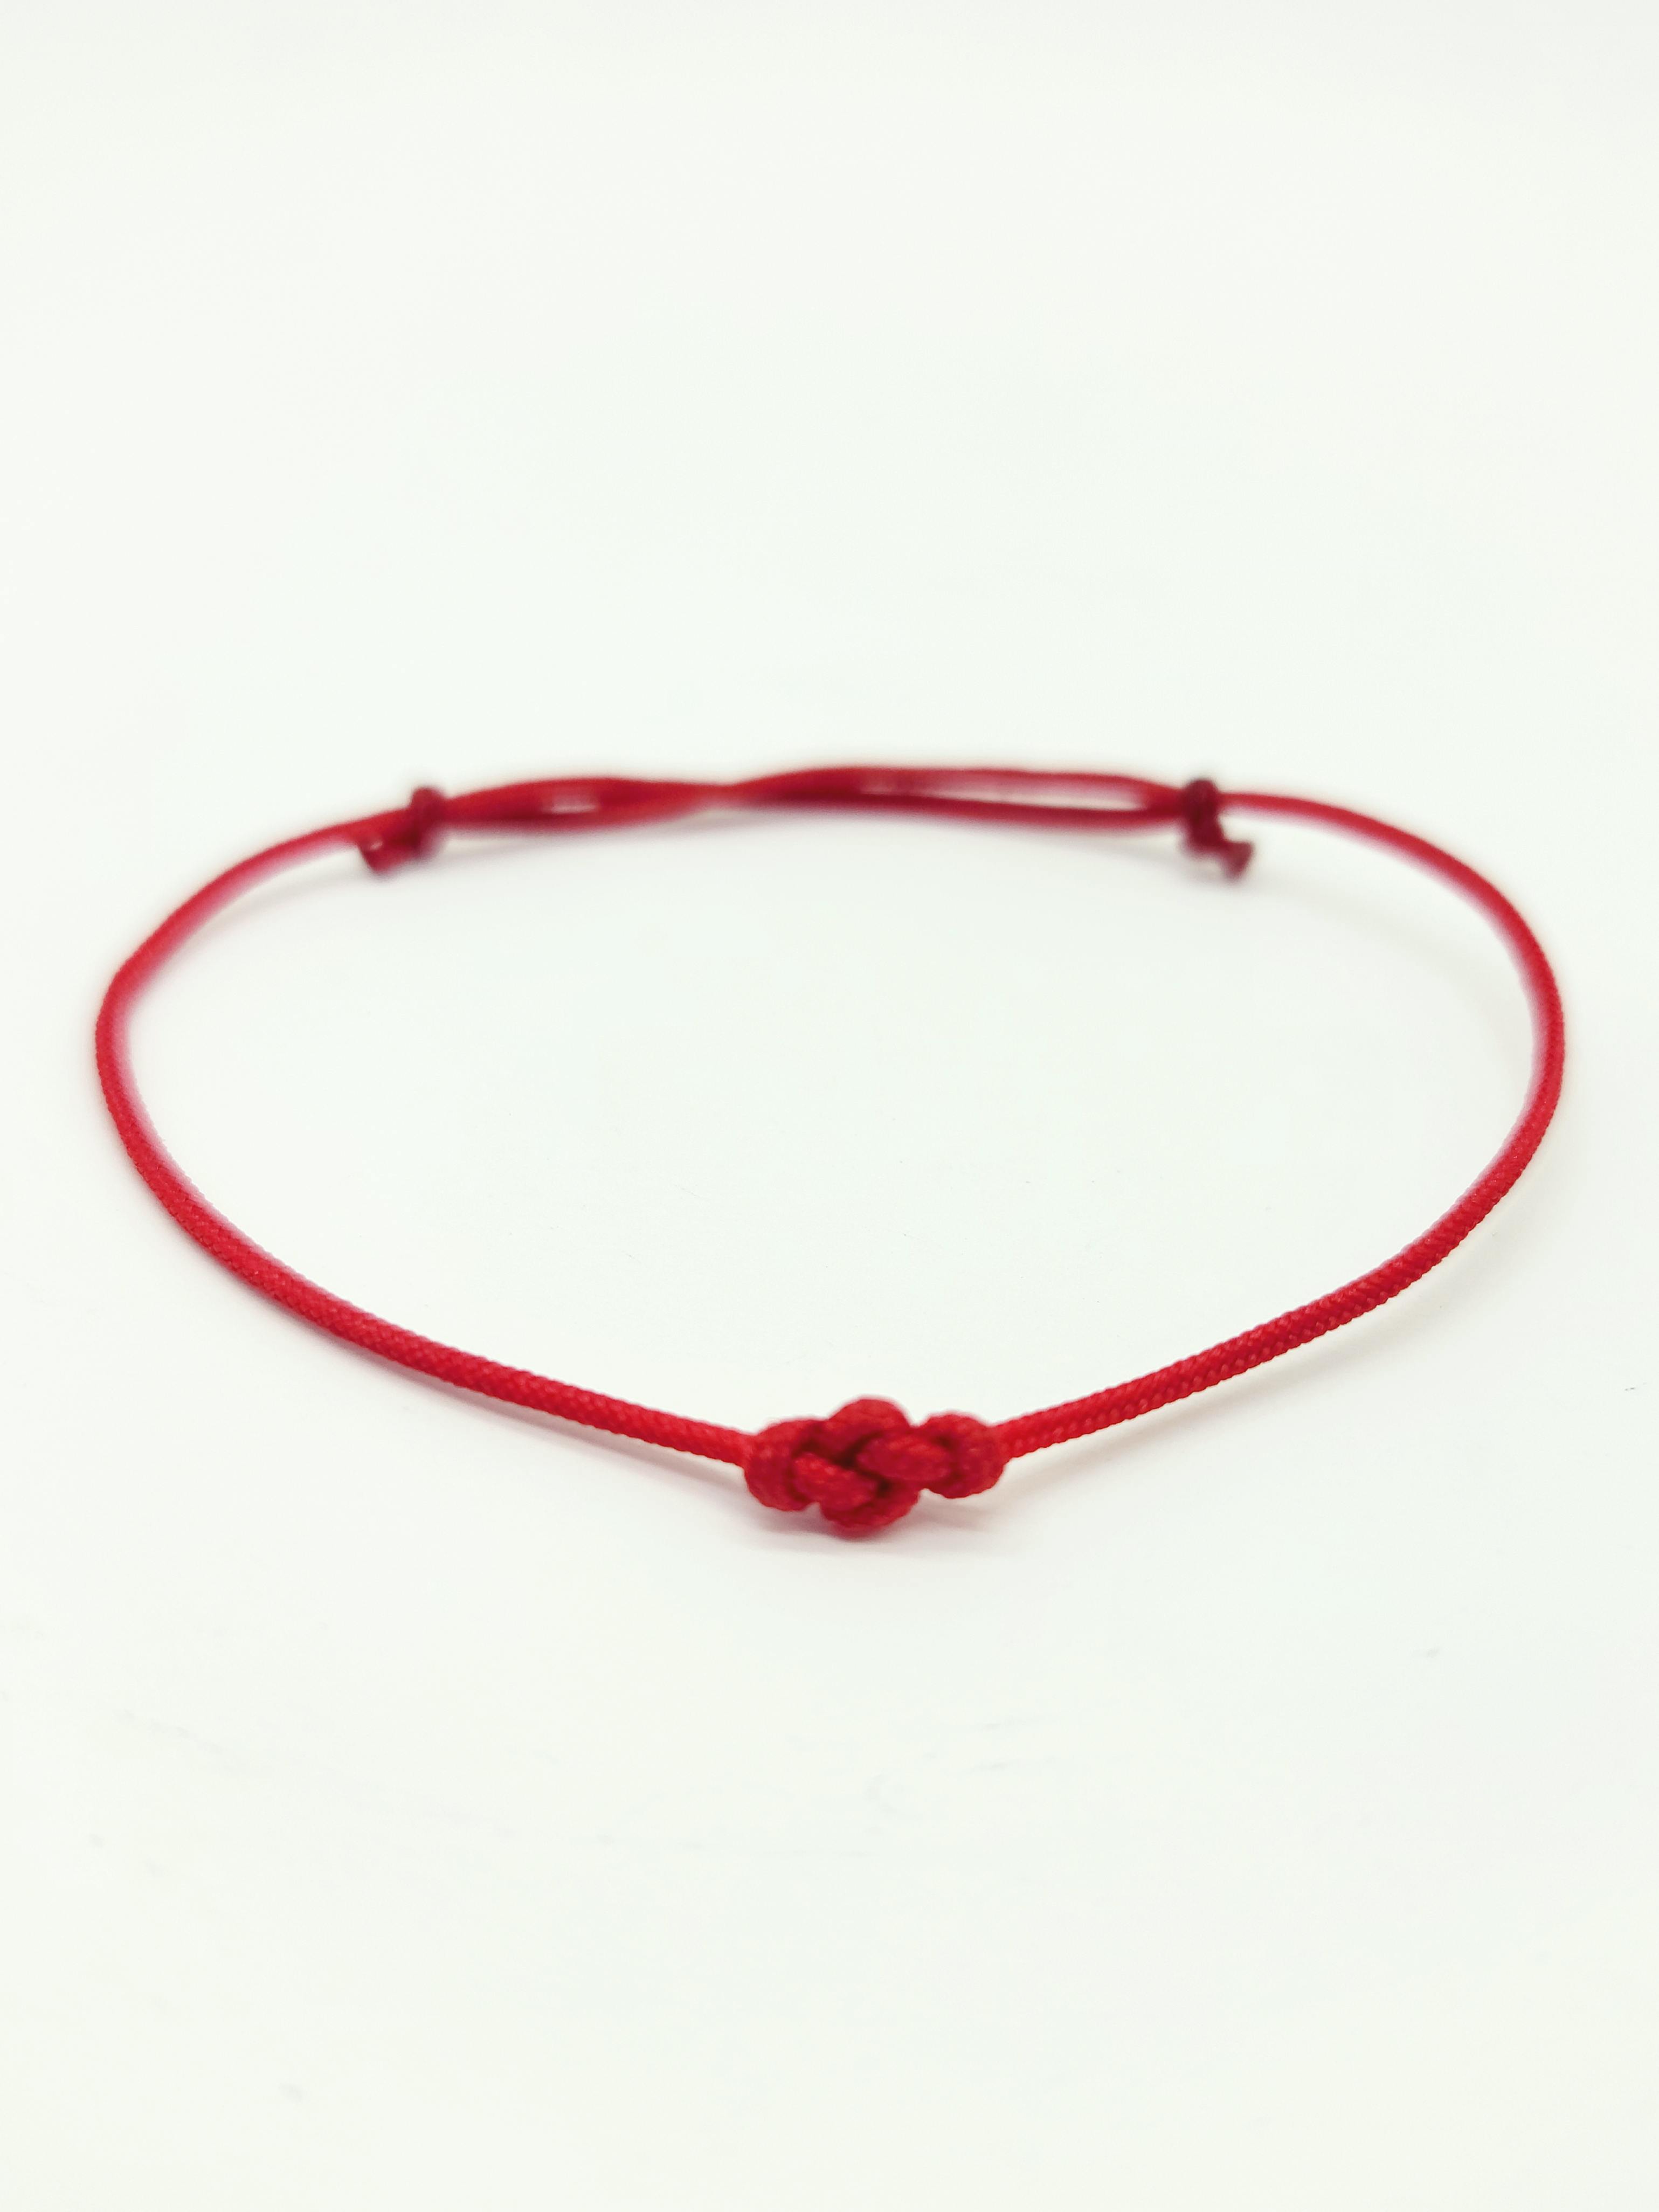 Tibetan Red String Buddhist Lucky Bracelet For Women Girl Handmade  Adjustable Hand Chain  Fruugo IN